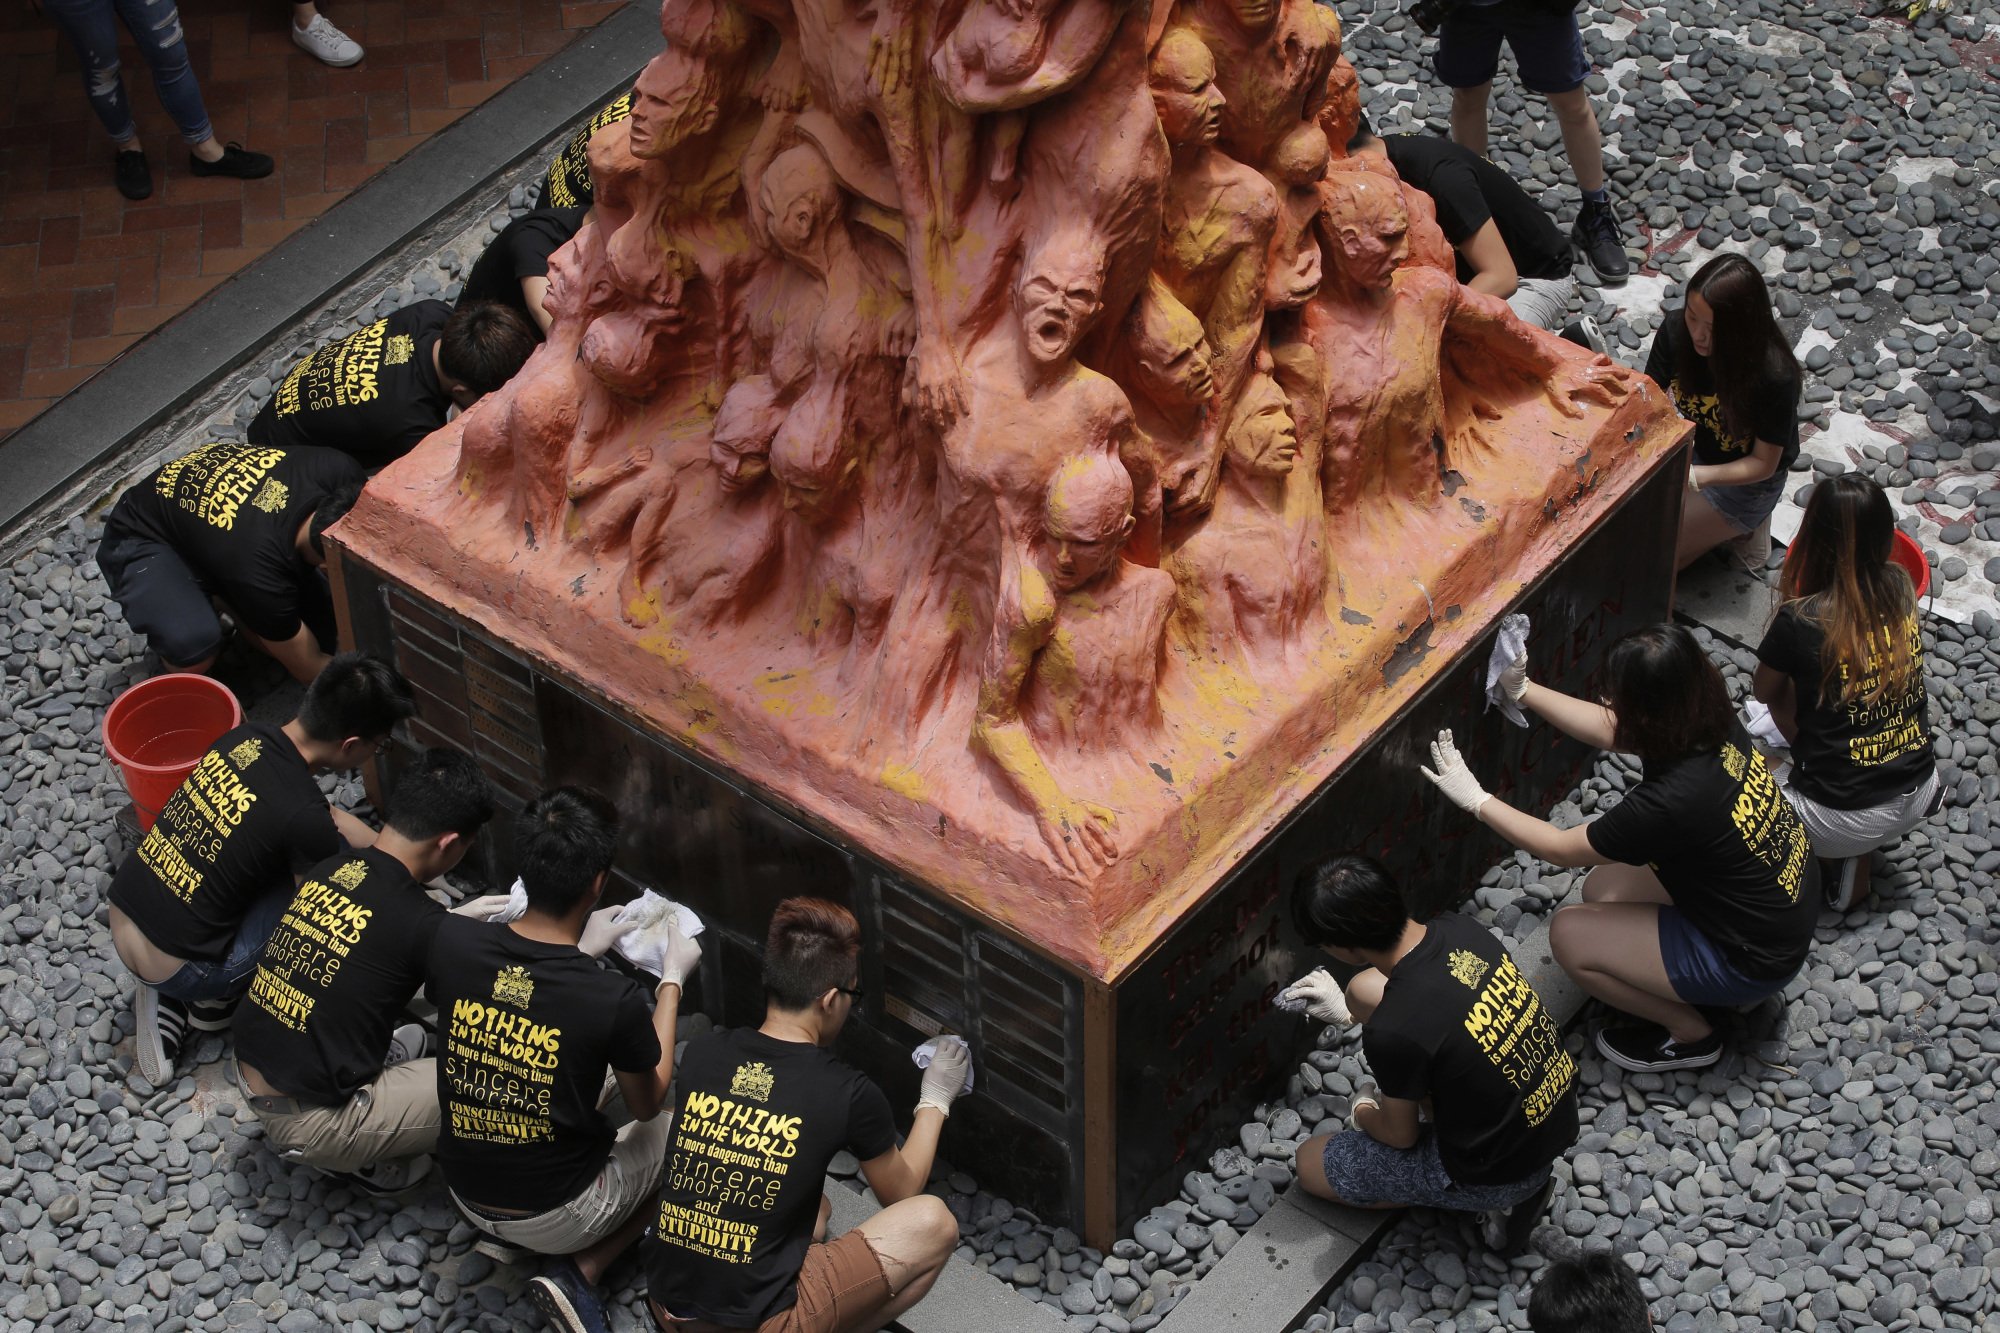 Σαν σήμερα 4 Ιουνίου – Η Σφαγή της Πλατείας Τιεν Αν Μεν: Μια “μαύρη ιστορία” που η Κίνα προσπαθεί να κρύψει